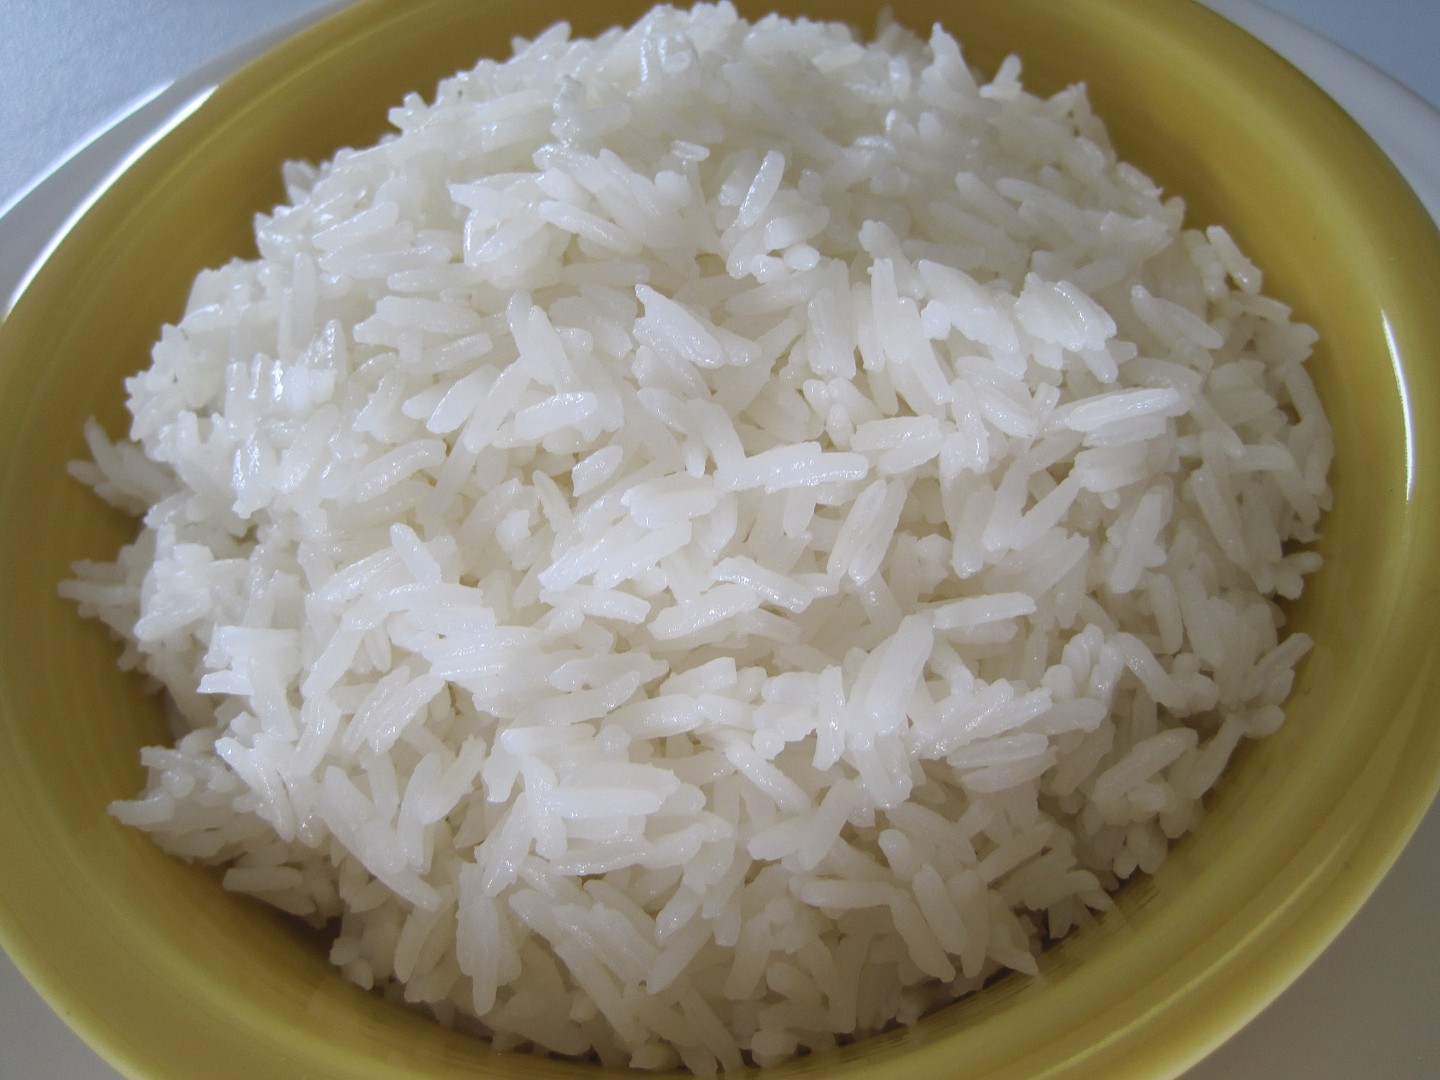 Rýže z čínské restaurace